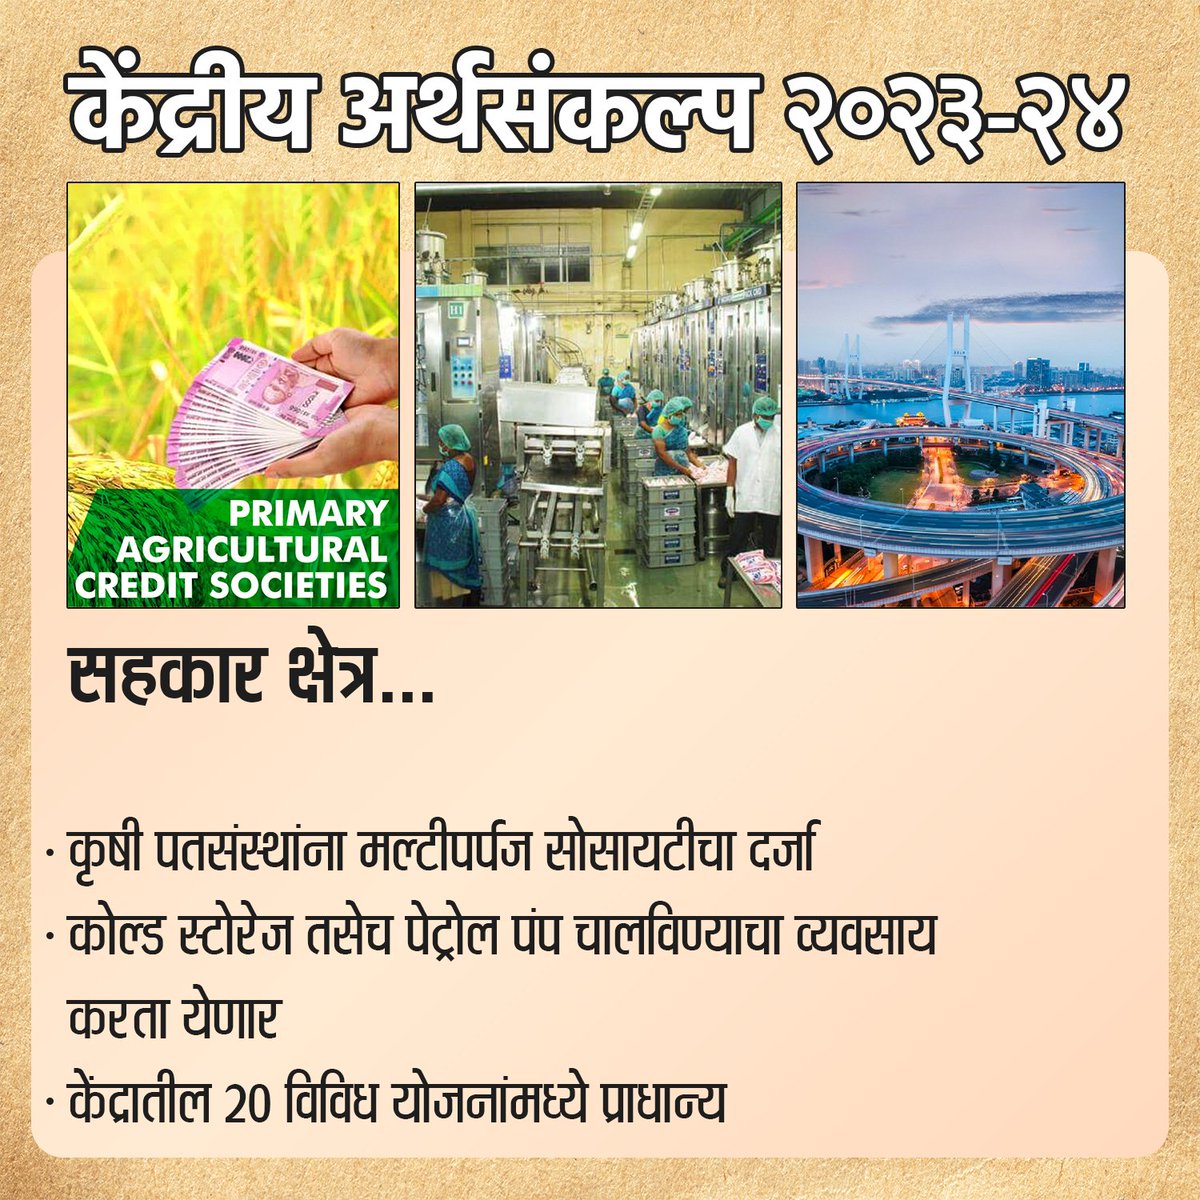 सहकार क्षेत्र...
.
.
#Budget2023 #Budget  #Maharashtra #maharashtratoday